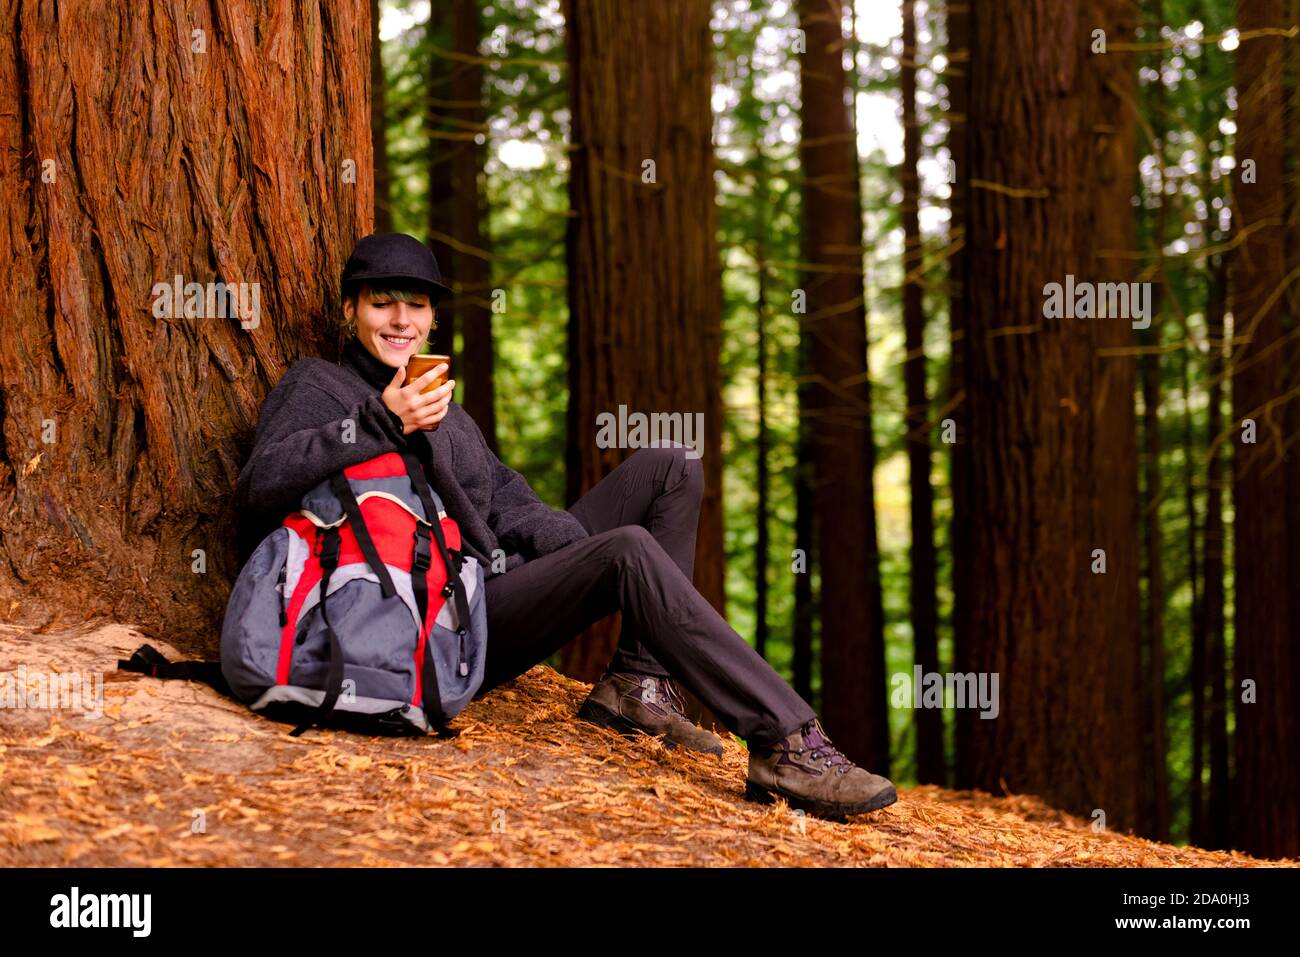 Touriste gai avec sac à dos sur l'arbre et la navigation sur smartphone Tout en se relaxant dans Monte Cabezon Monument naturel de Sequoias pendant vacances Banque D'Images